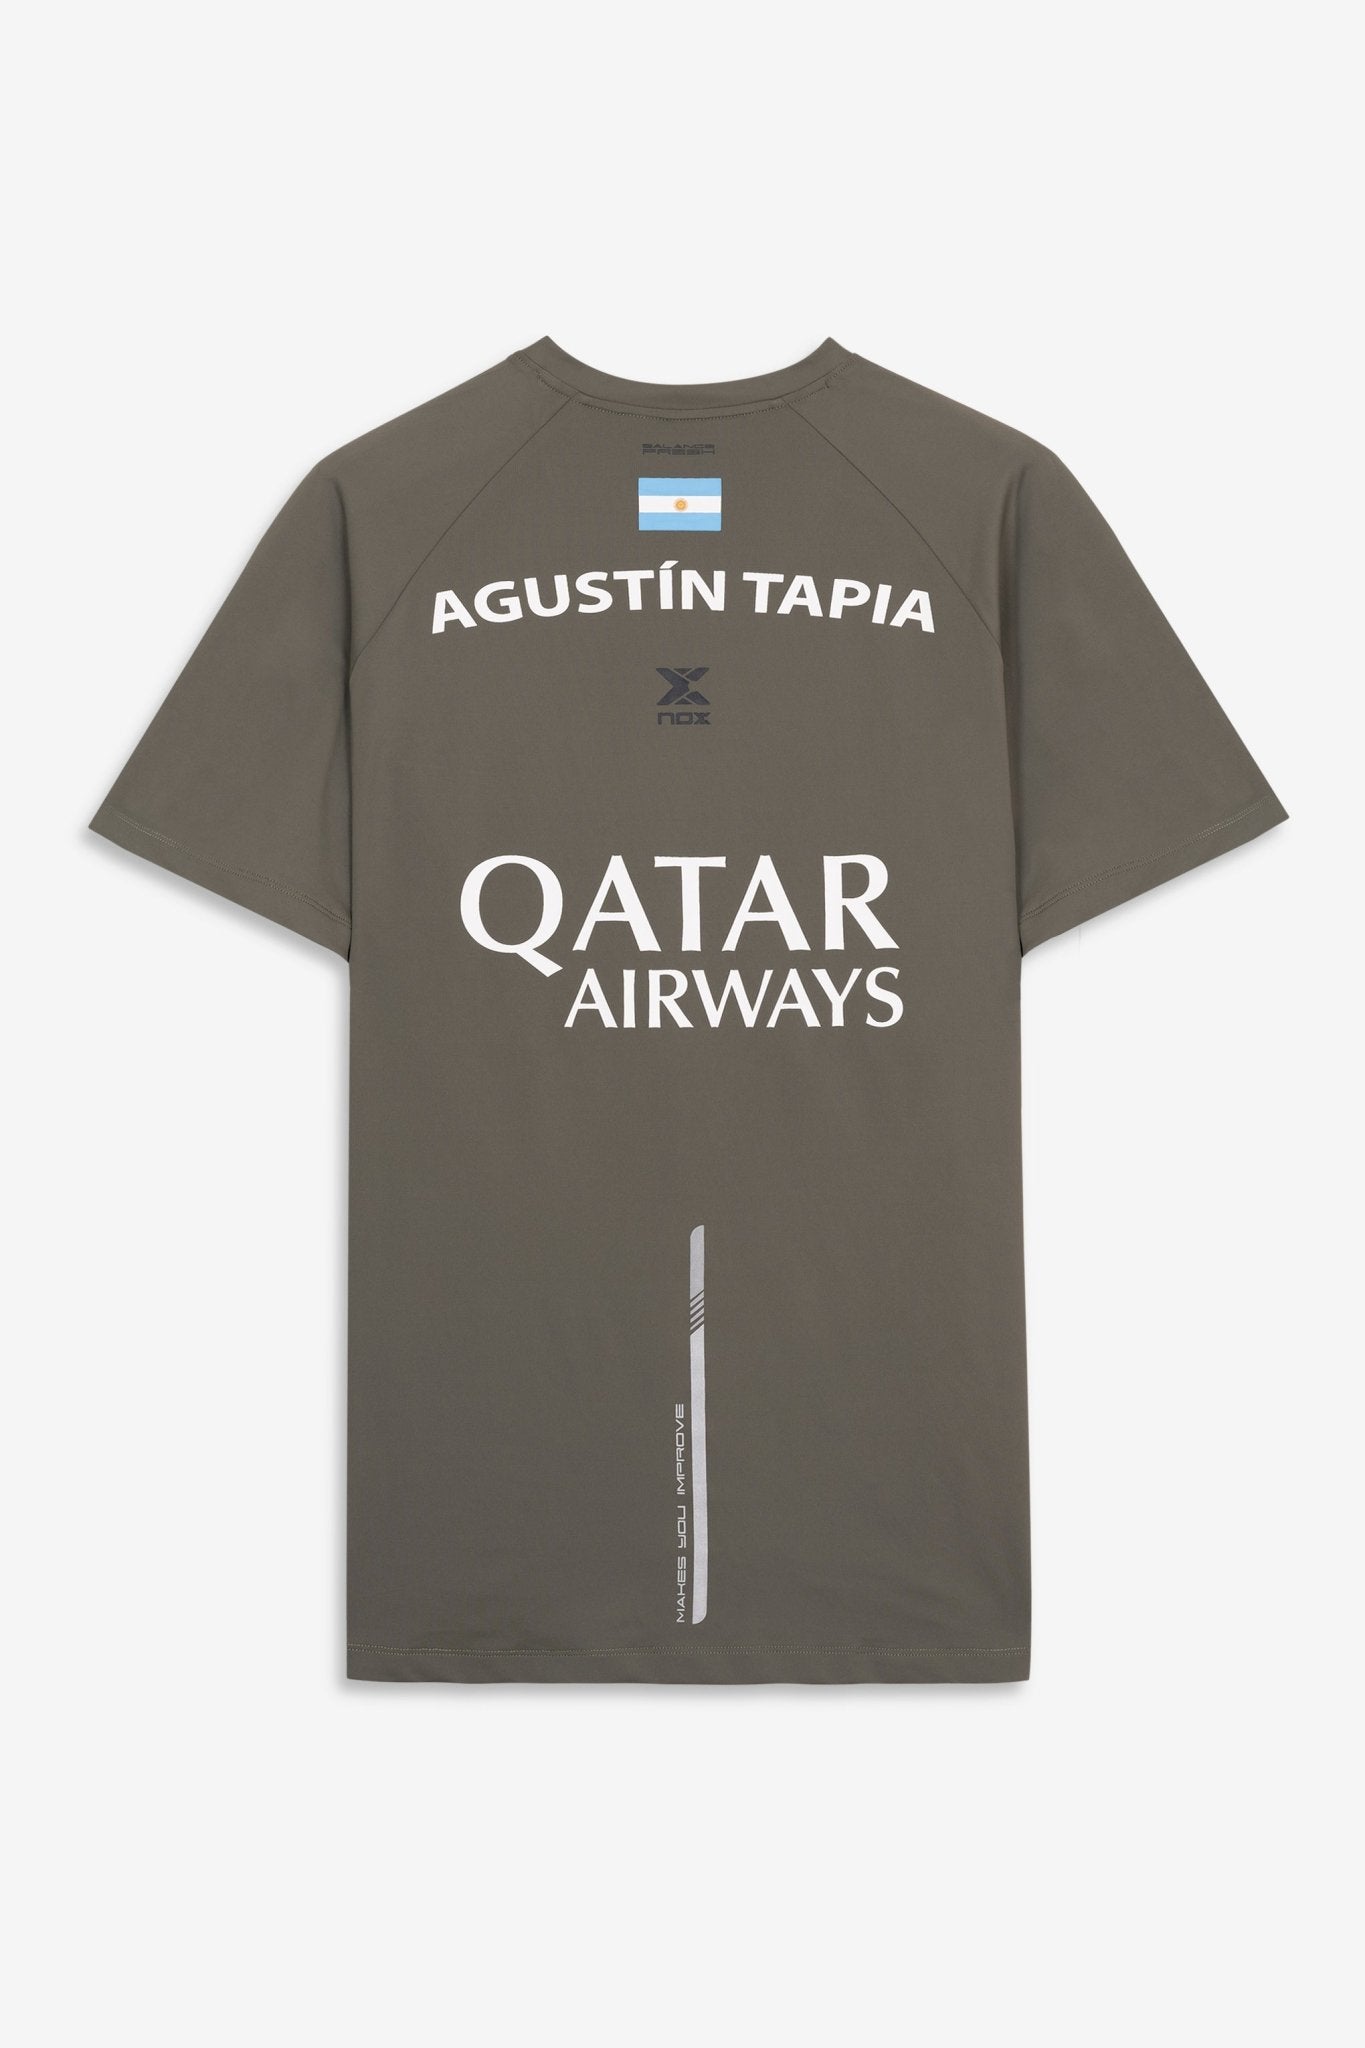 Agustín Tapia officieel shirt